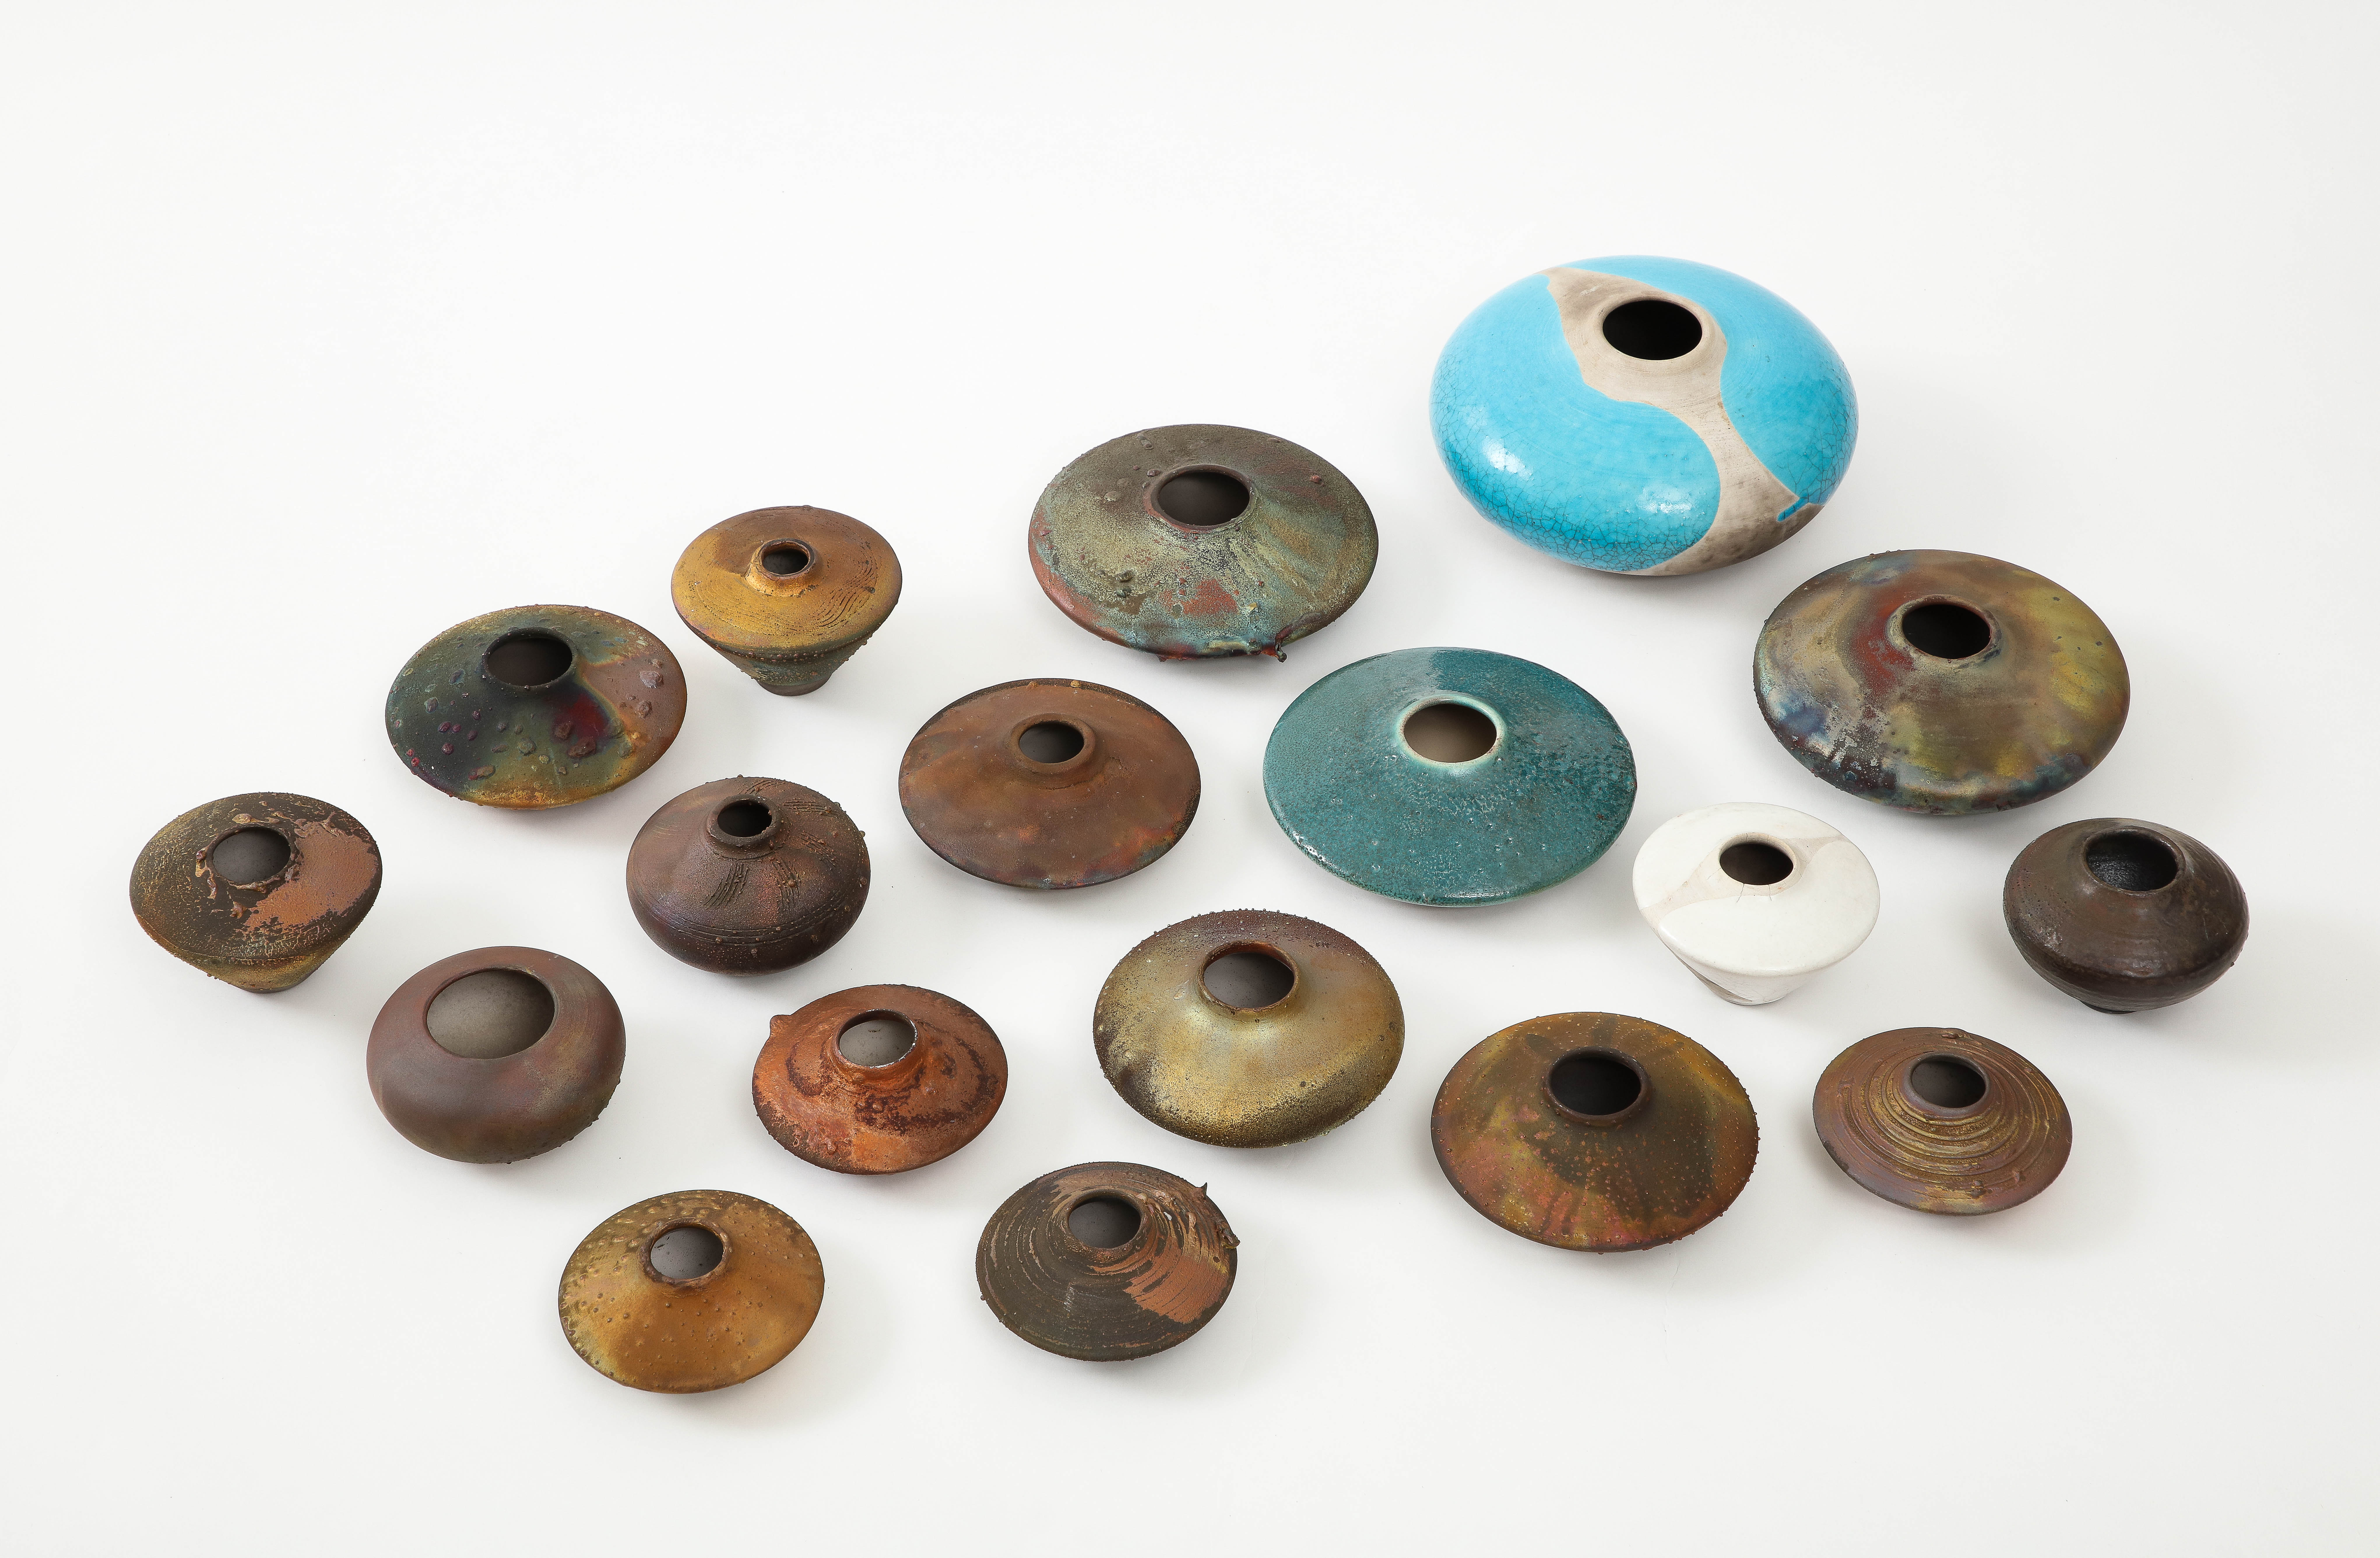 collection de 16 pièces de poterie Raku moderniste des années 1970-1990 de l'artiste Norman Bacon de Woodstock, NY.

La taille varie, la plus grande pièce mesure 6,5 pouces de diamètre et 2,5 pouces de hauteur
La plus petite pièce mesure 4'' de